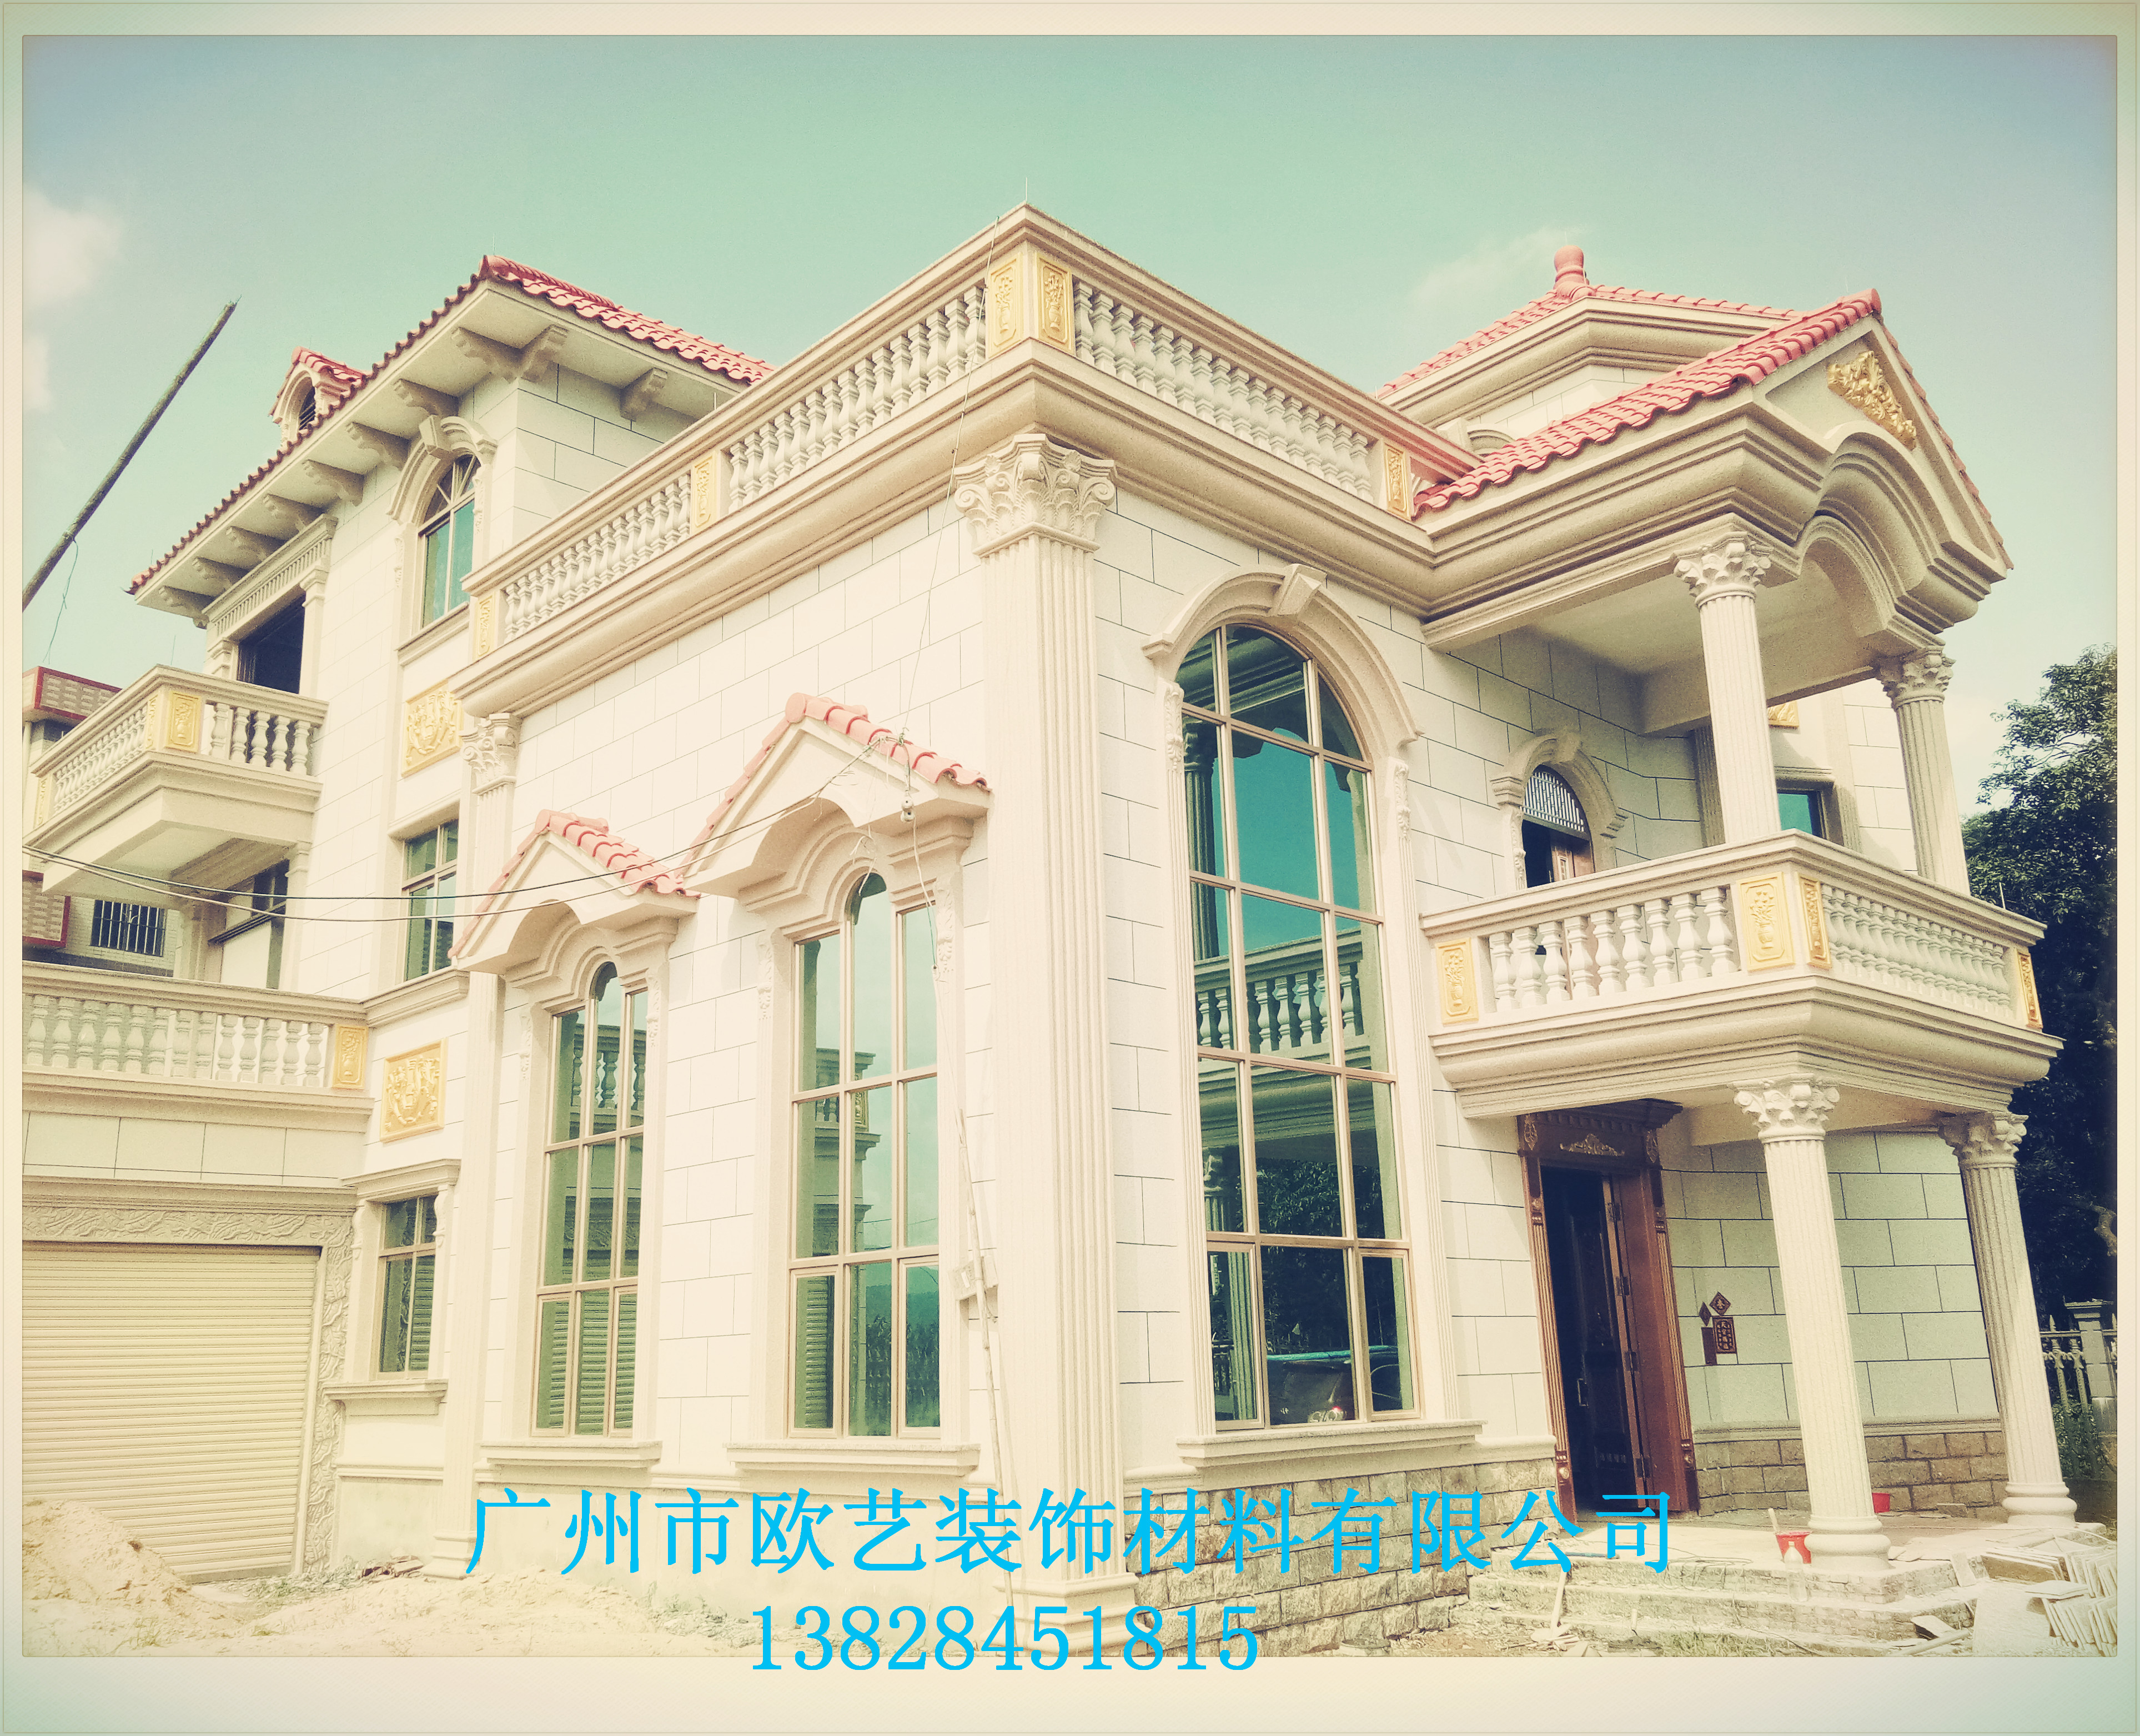 广州欧艺工程案例|广州欧艺工程案例图片|欧艺工程案例图片